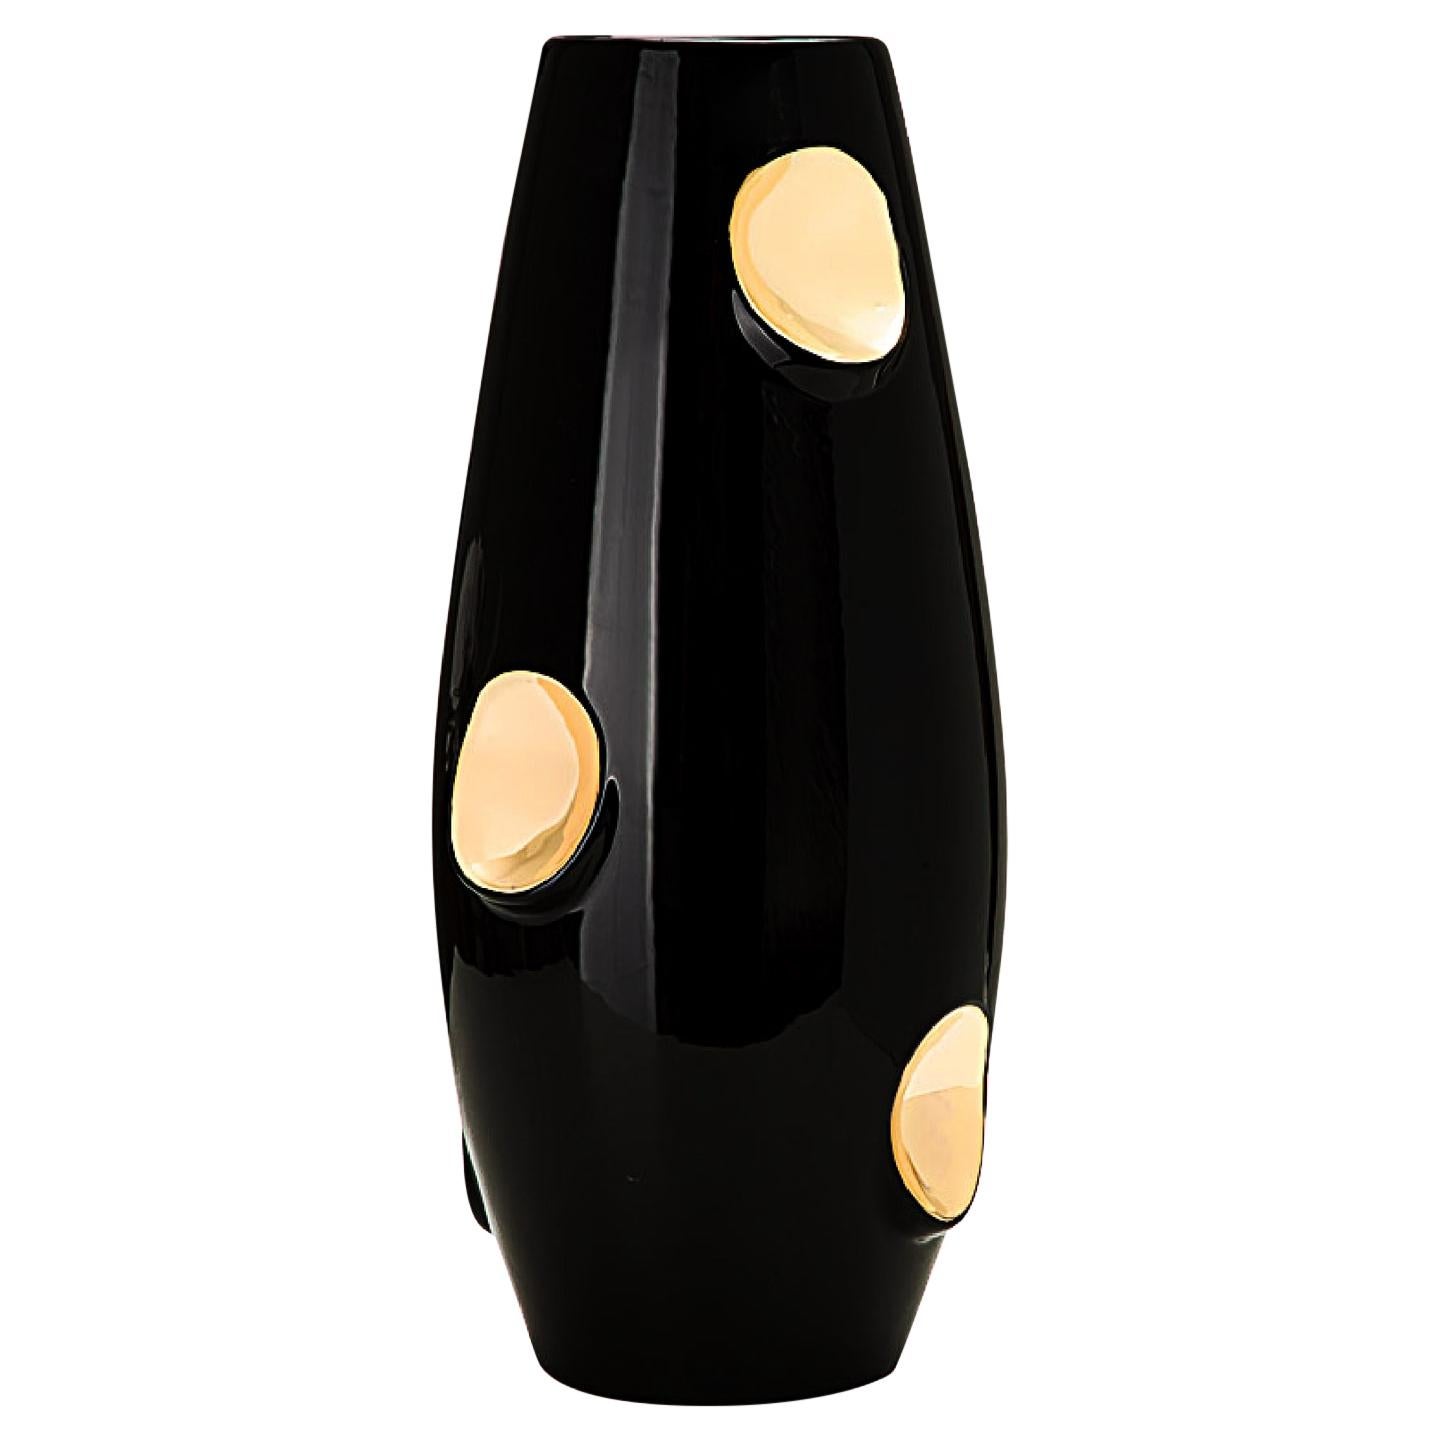 OKO Black Gold Ceramic Vase by Malwina Konopacka For Sale